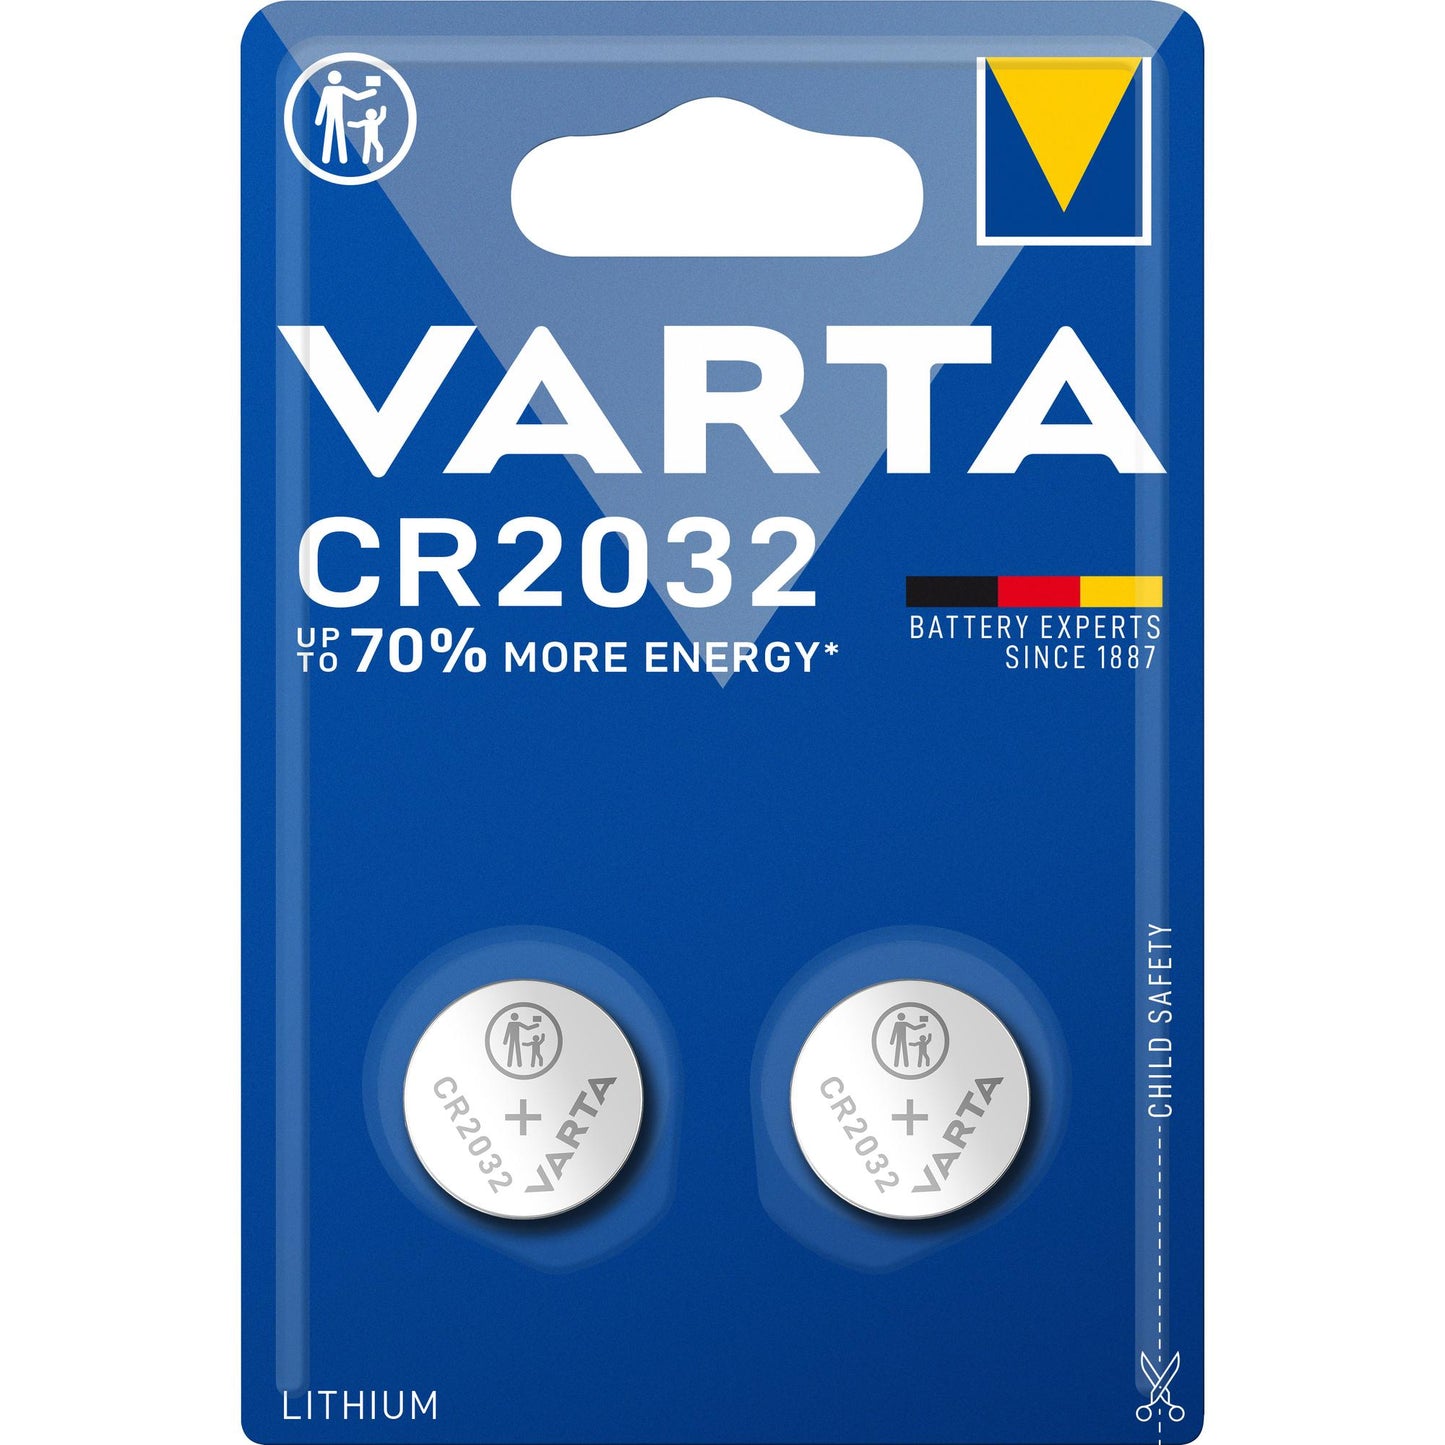 VARTA Batterie Lithium Knopfzelle CR2032, 3V Electronics, Retail Blister (2-Pack)